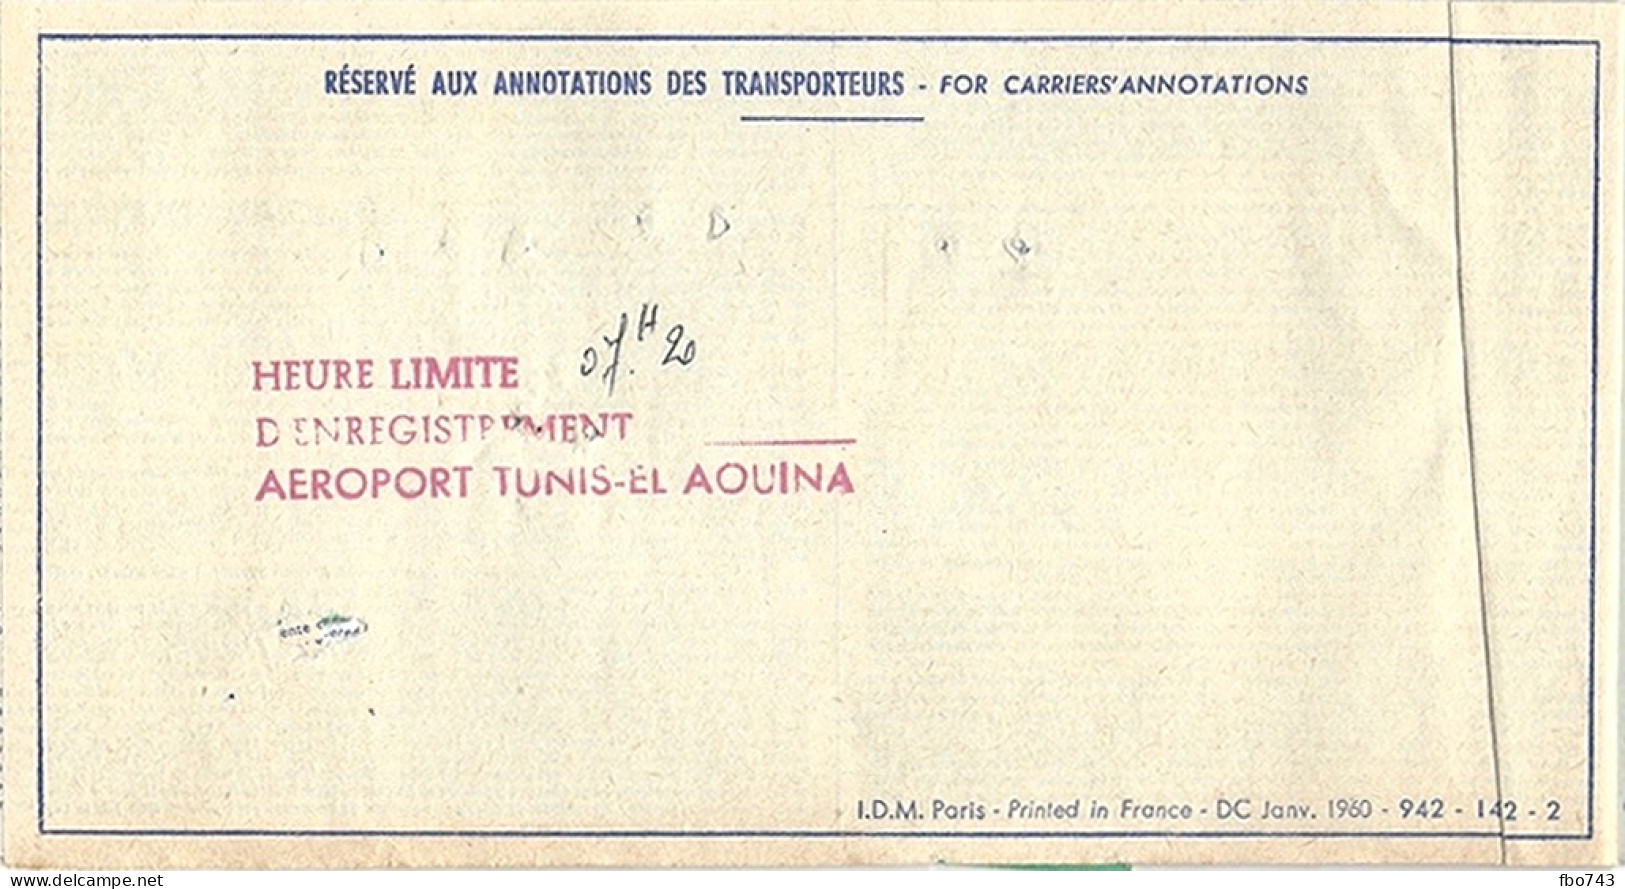 1962 Ticket Air France Marseille-Tunis-Marseille (+bonus) - Europe